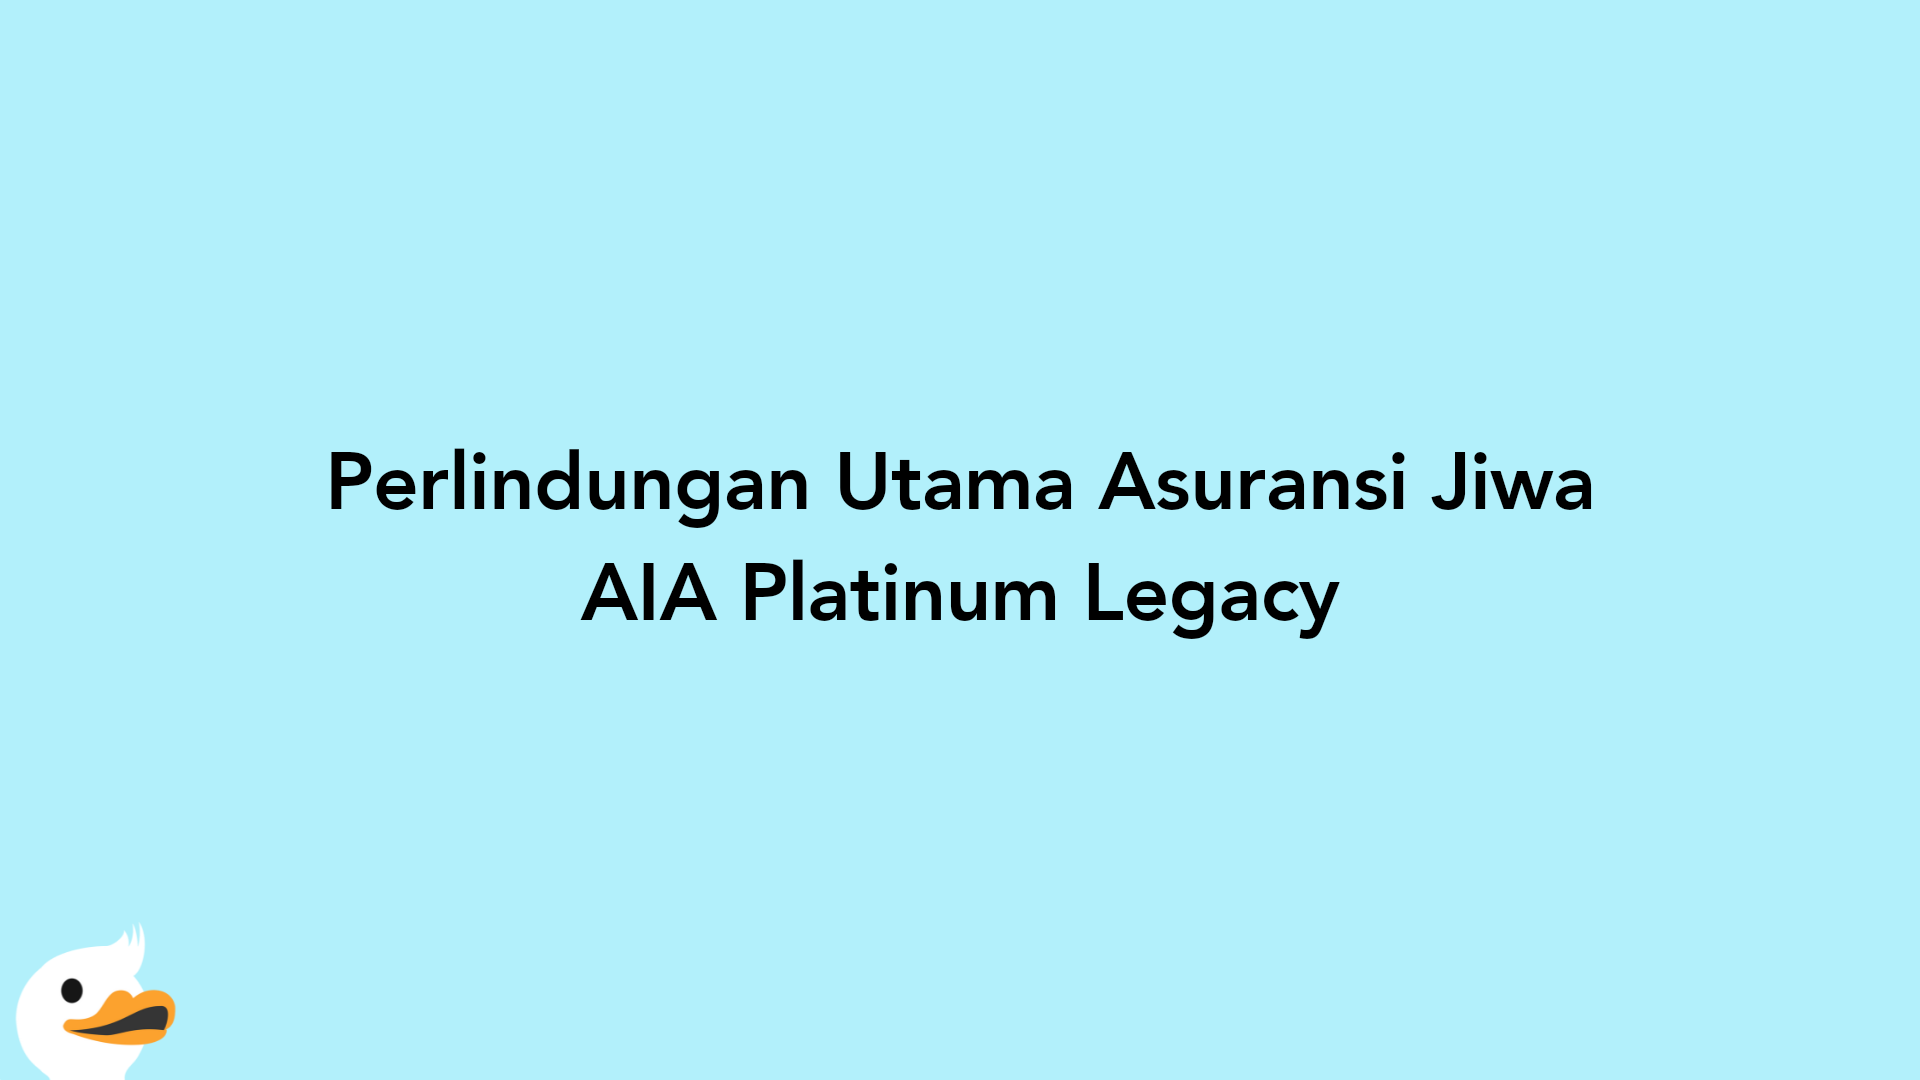 Perlindungan Utama Asuransi Jiwa AIA Platinum Legacy